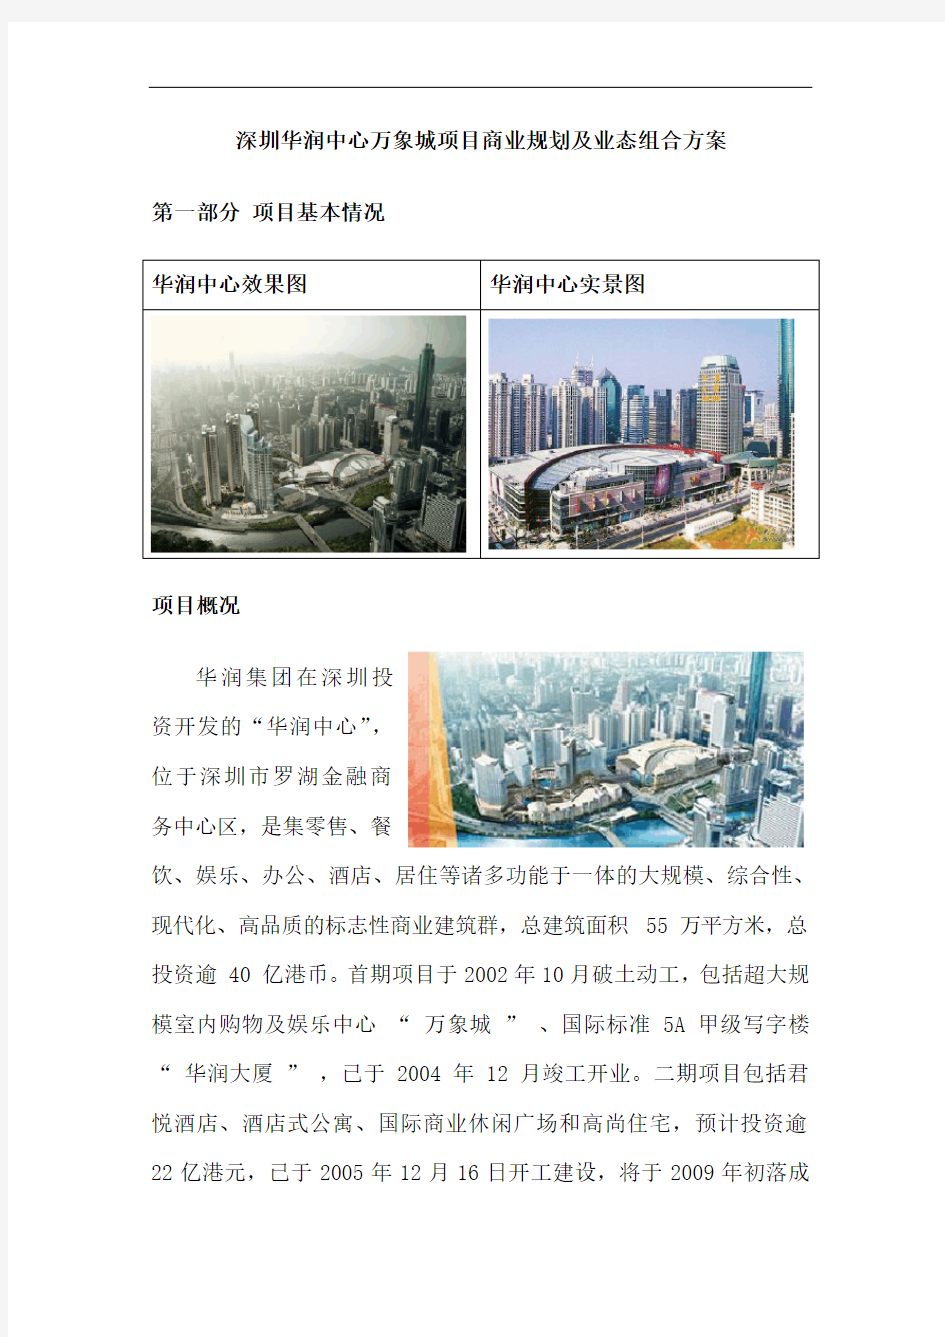 深圳华润中心万象城项目商业规划及业态组合方案-15DOC